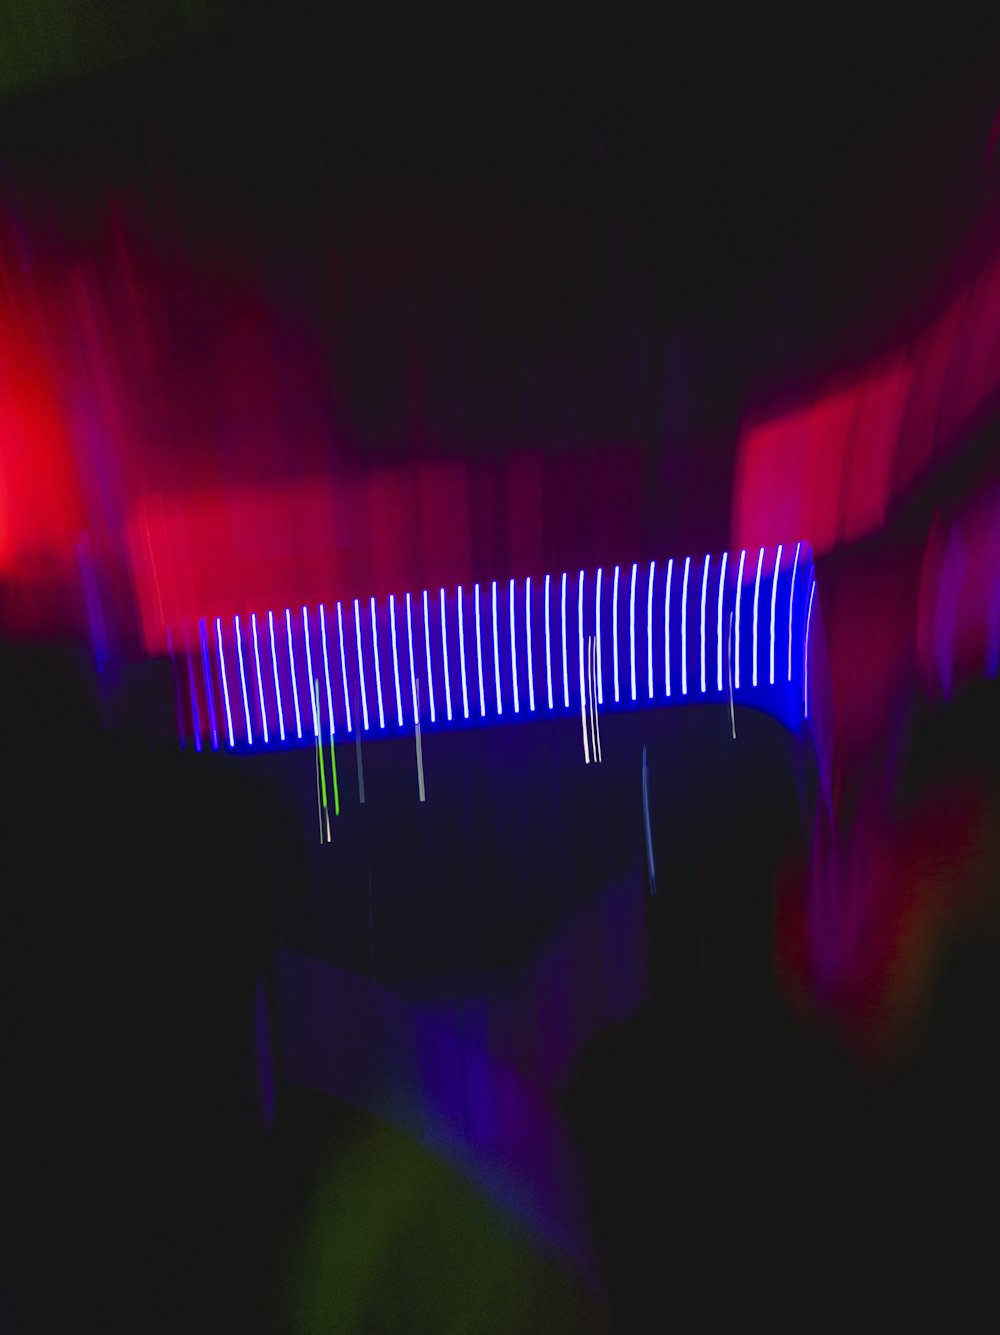 a blurry photo of a bridge in the dark